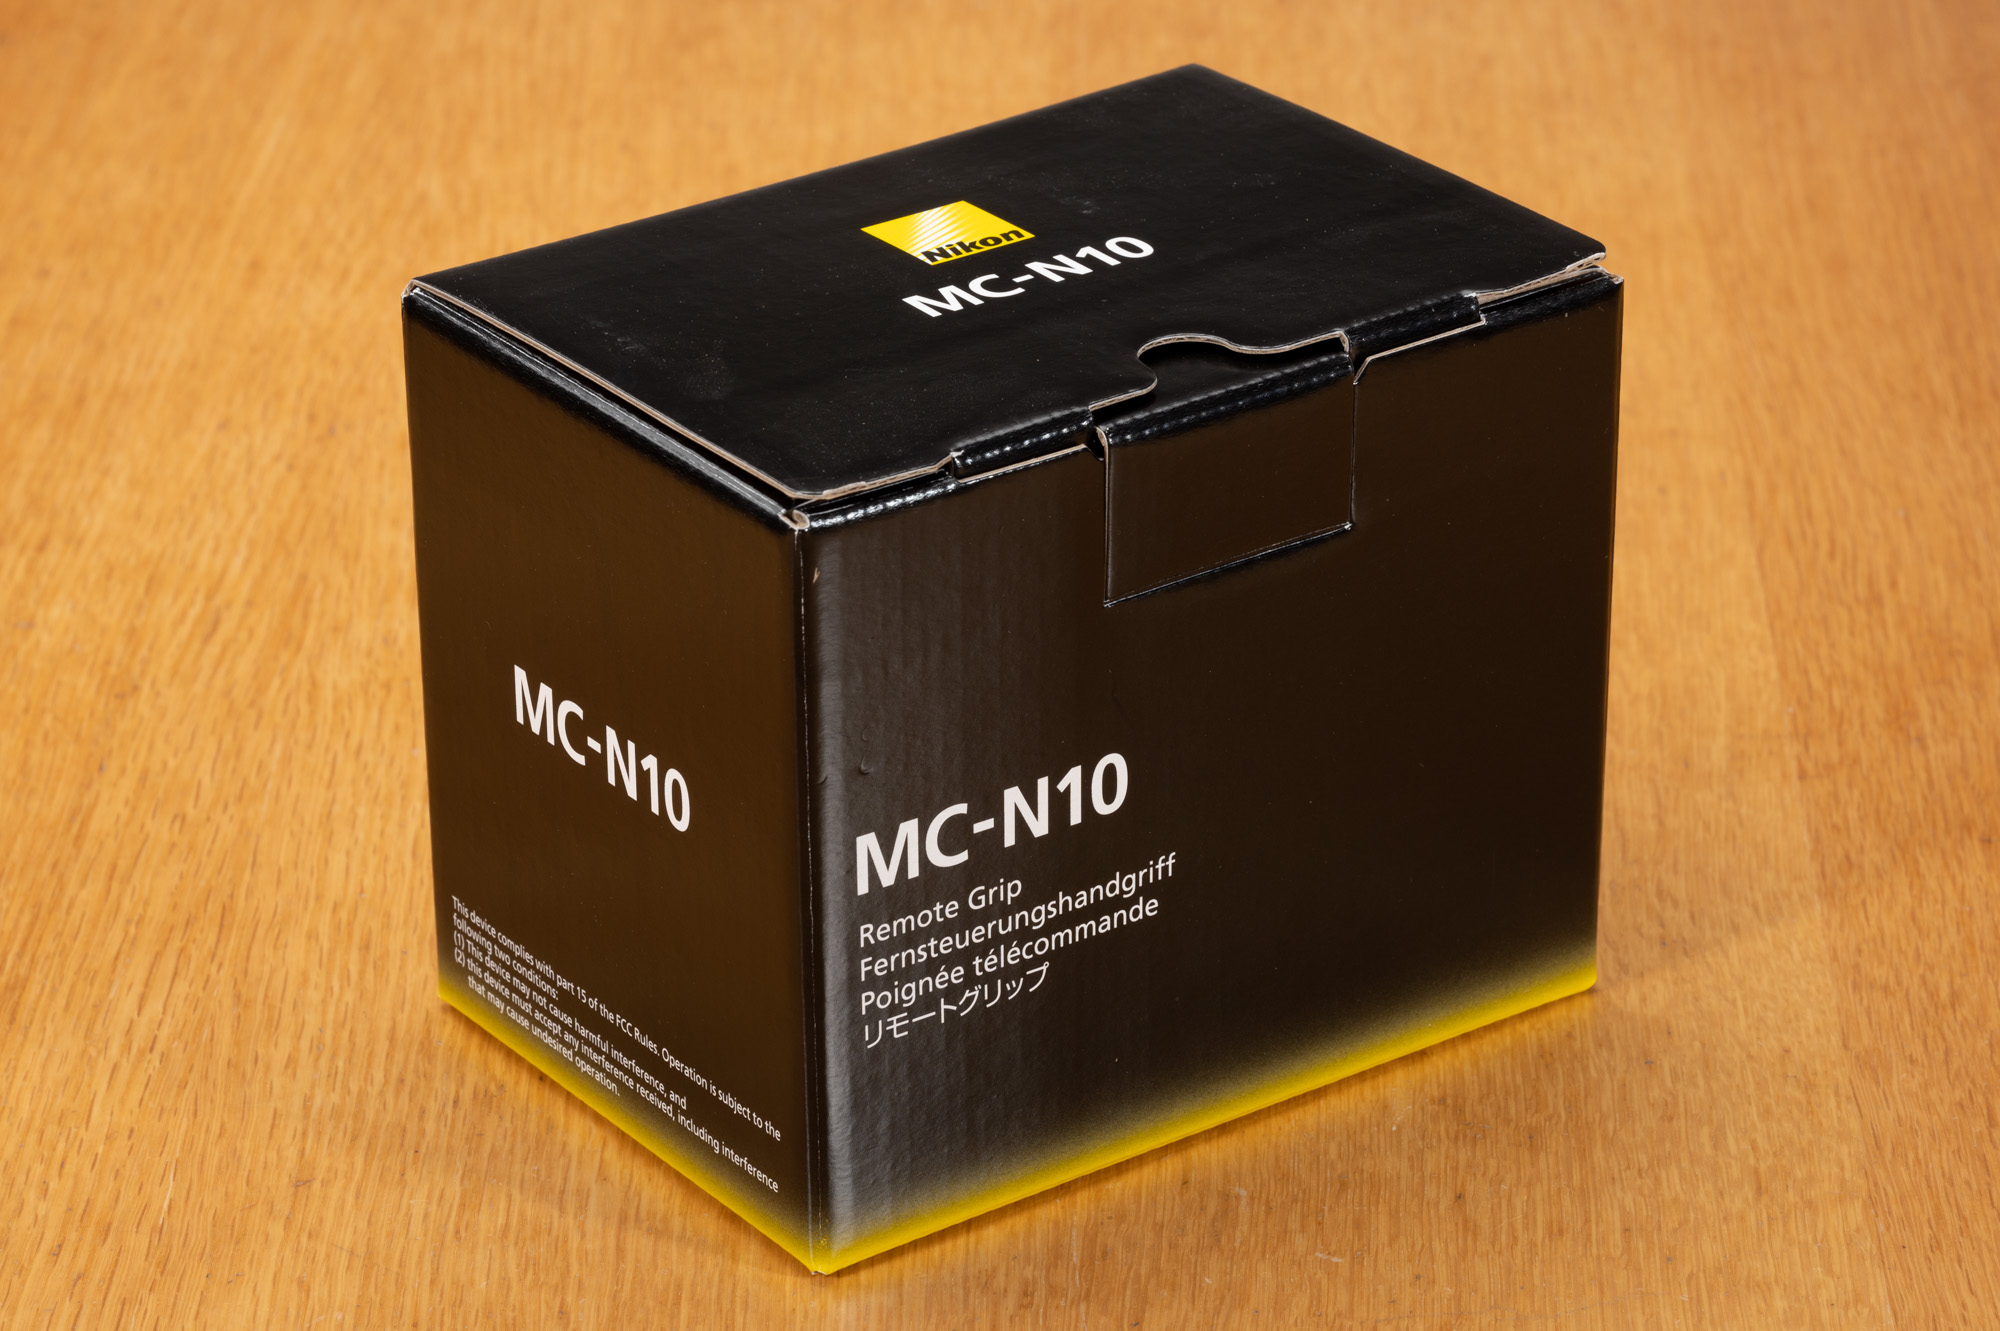 Nikon MC-N10（リモートグリップ）の元箱